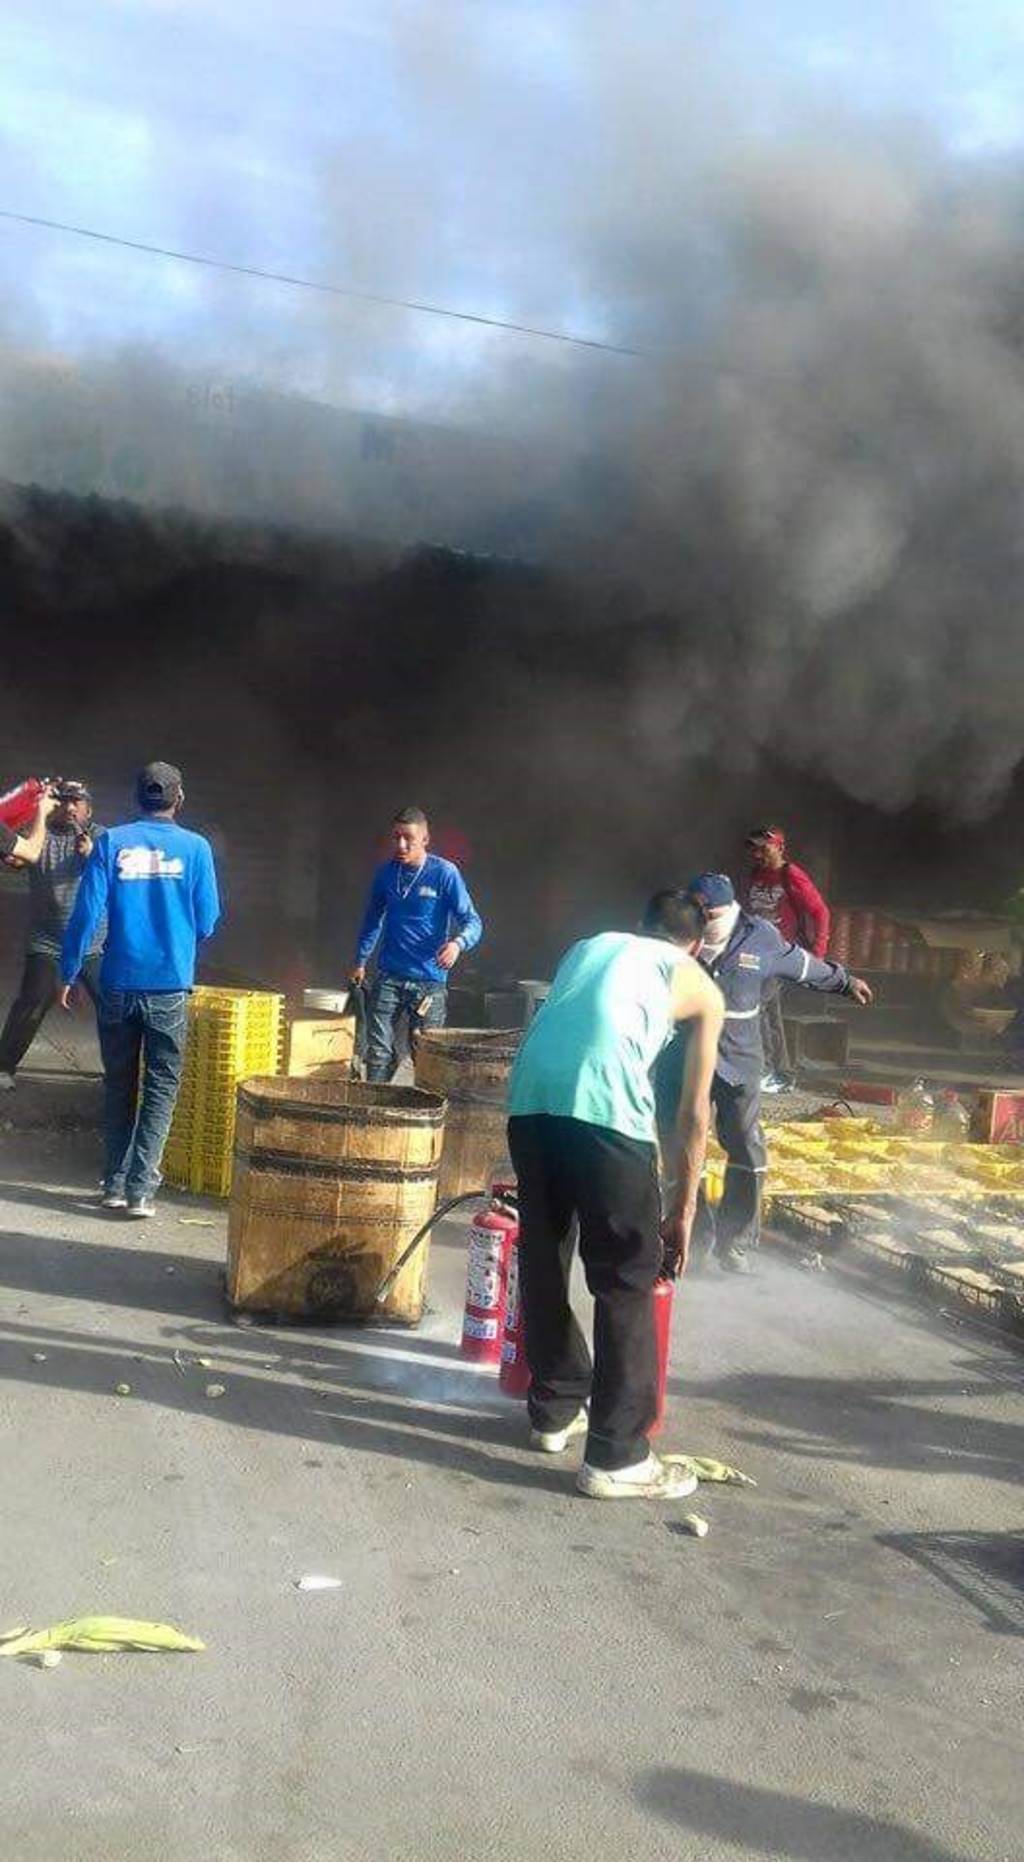 Apoyo. Locatarios del Mercado de Abastos apoyaron a los Bomberos a sofocar el incendio utilizando extinguidores. 